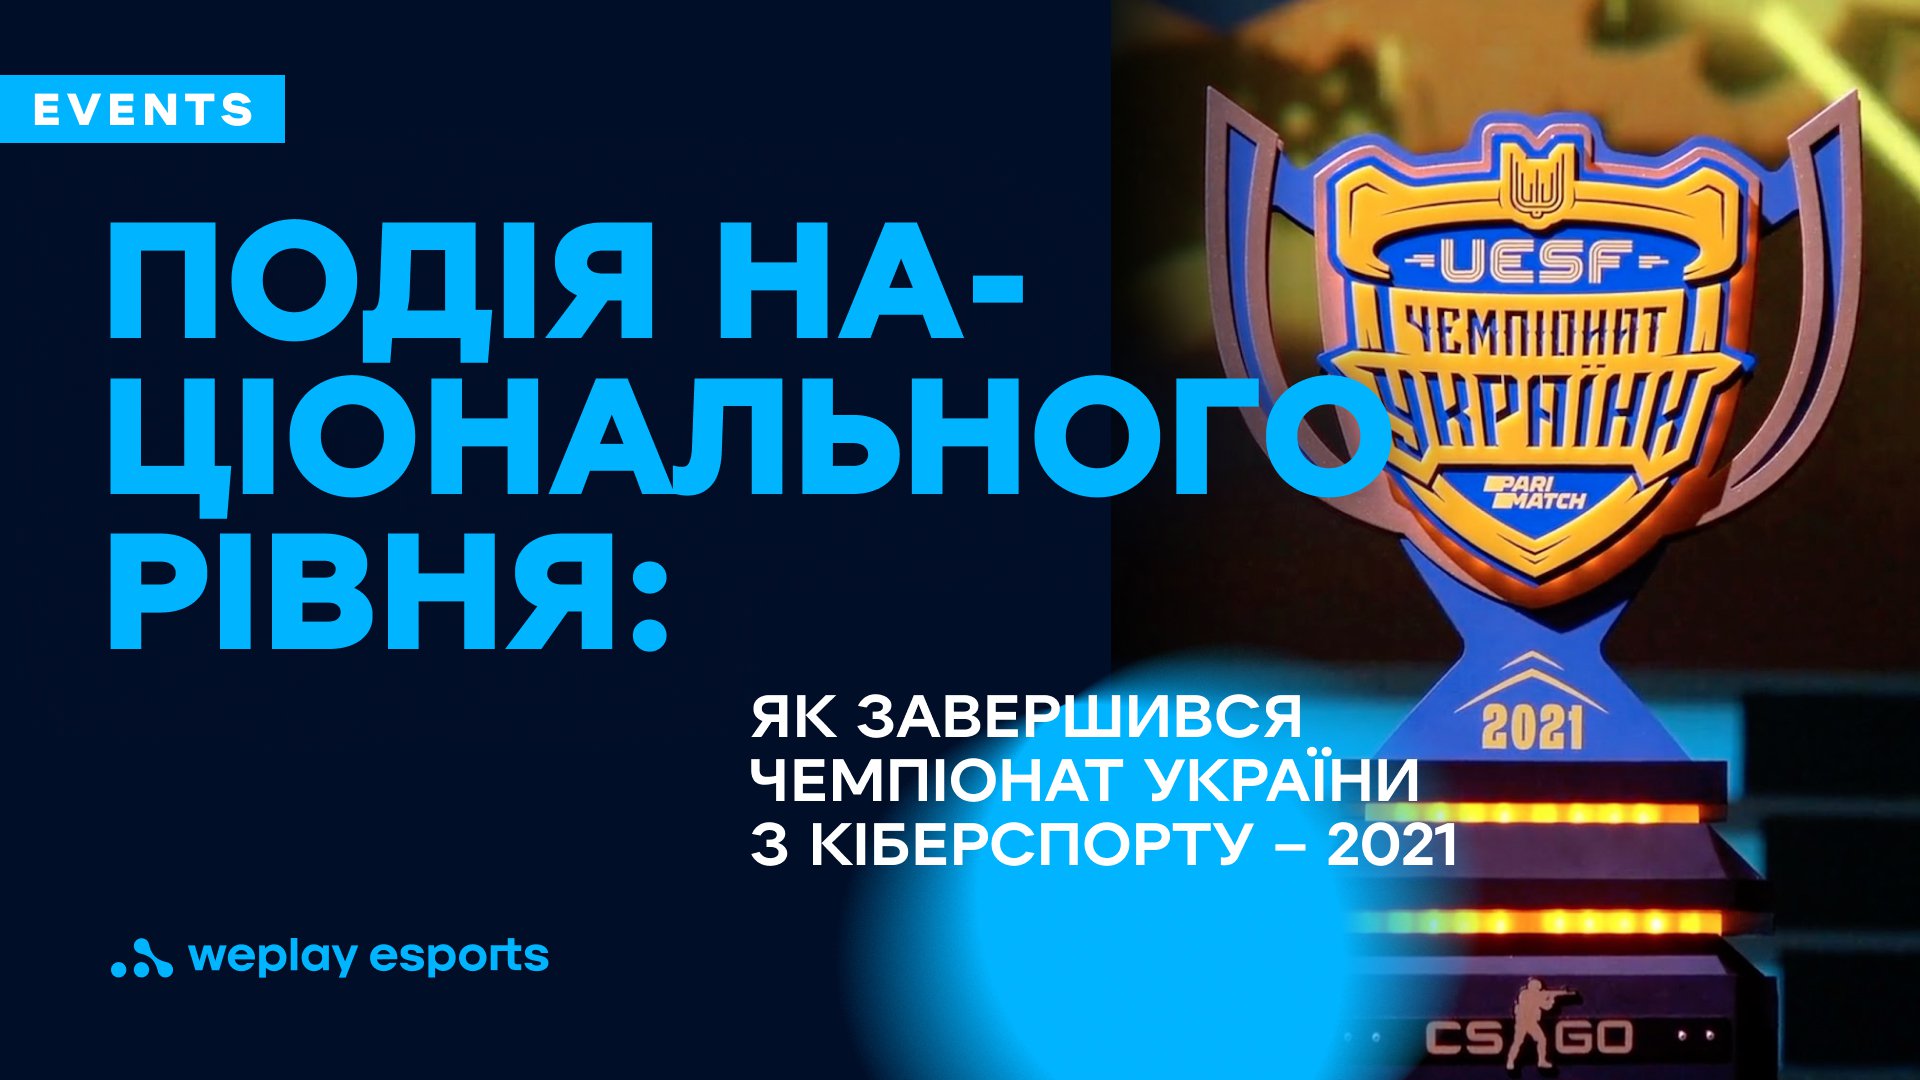 Подія національного рівня: як завершився Чемпіонат України з кіберспорту – 2021. Фото: UESF